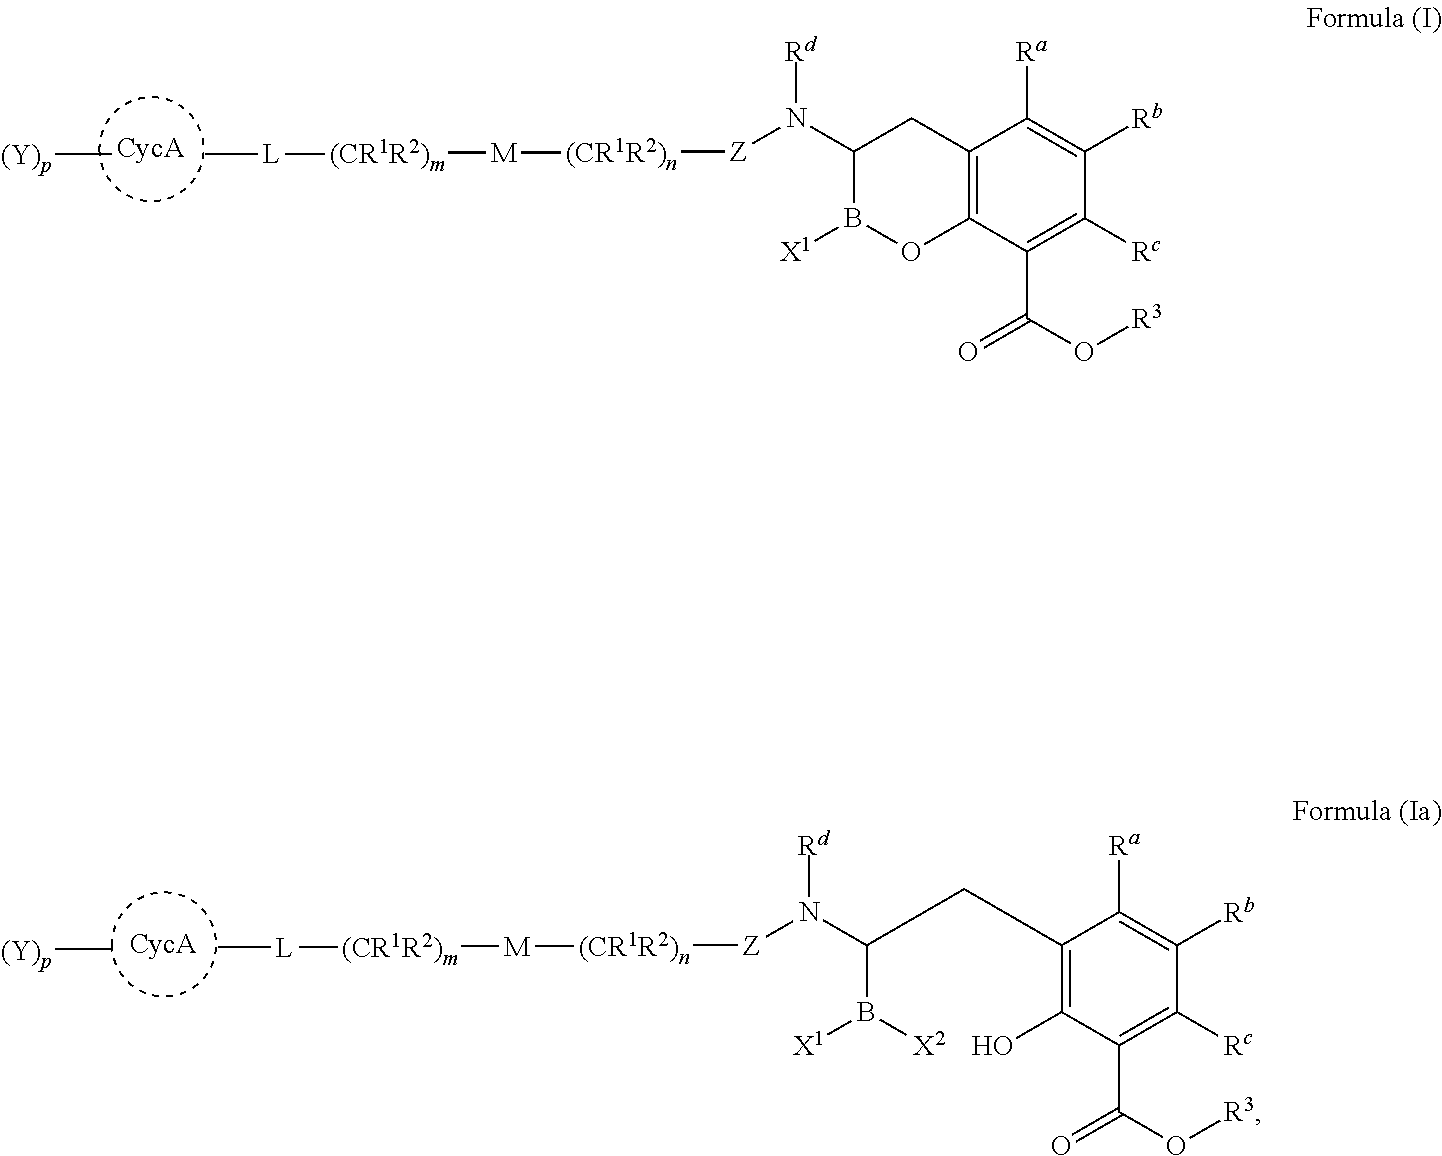 Beta-lactamase inhibitors